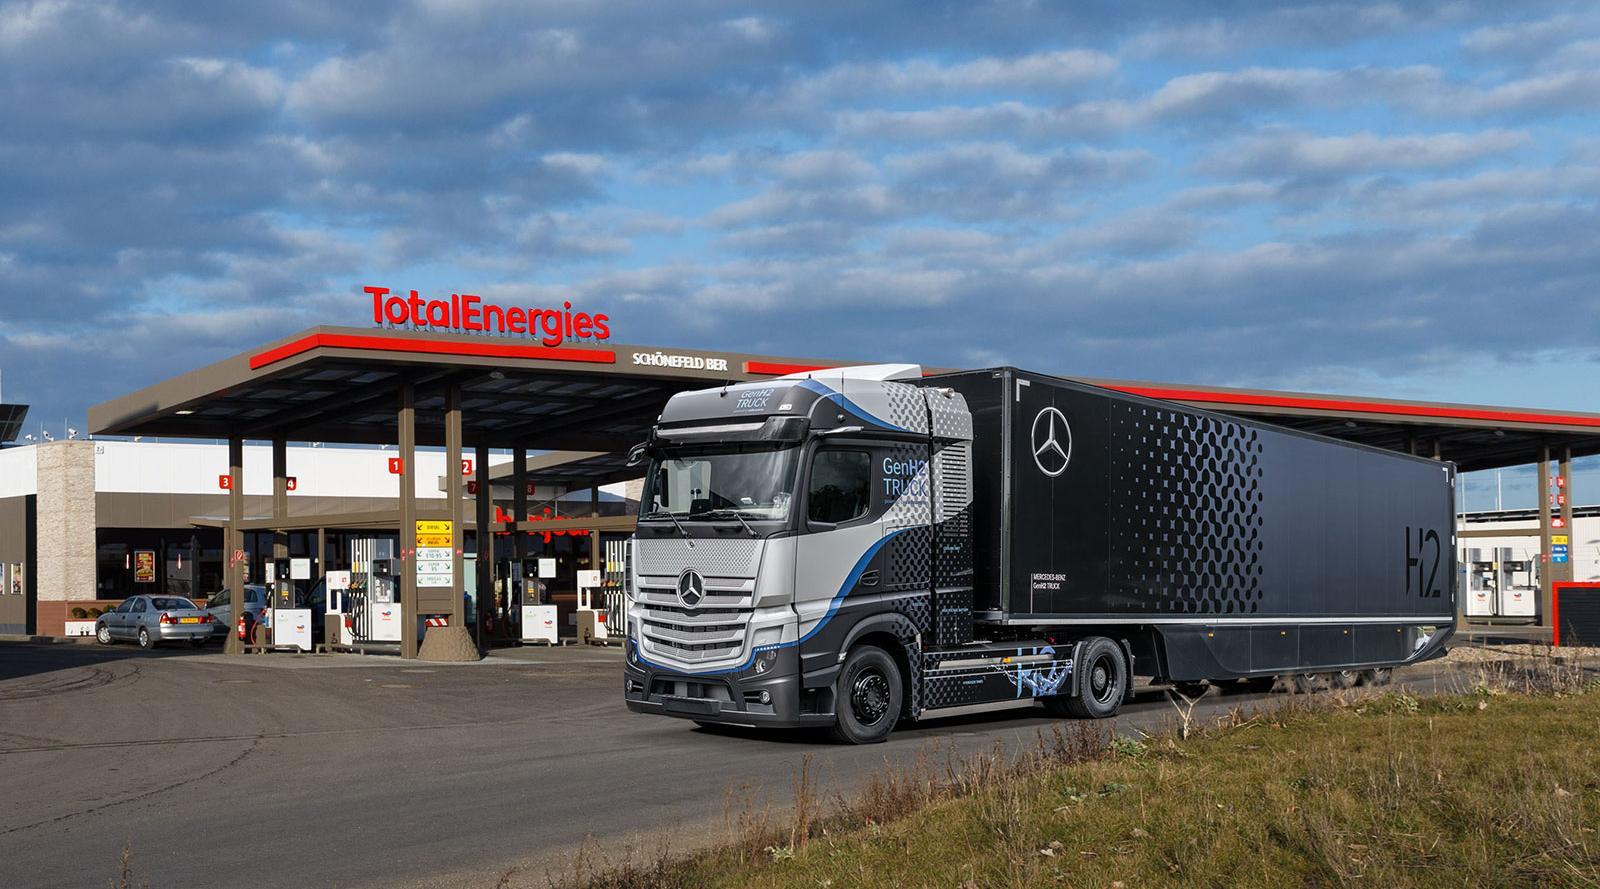 Camion en estacion TotalEnergies hidrogeno